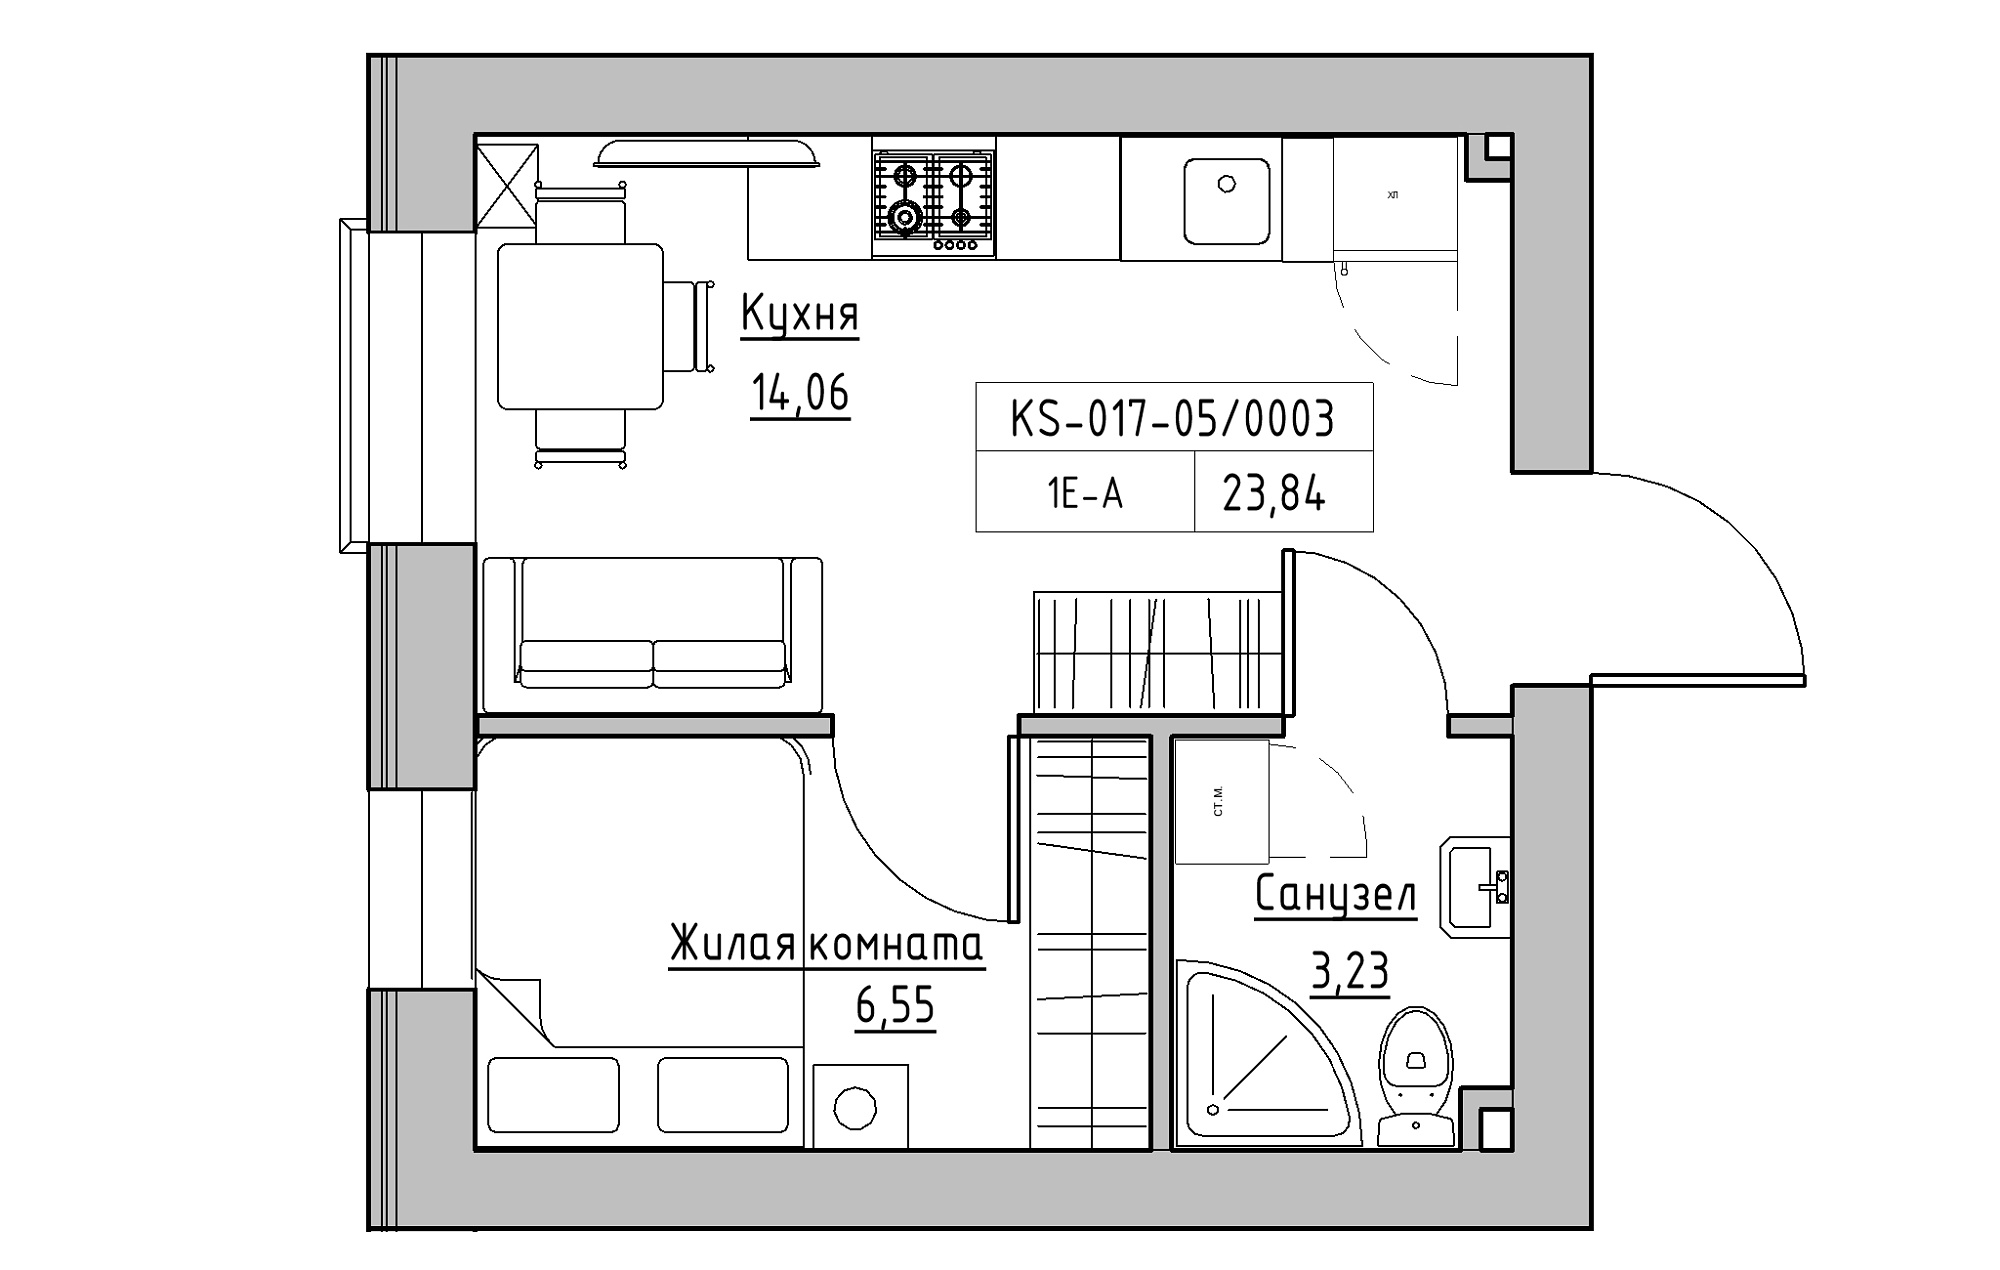 Планировка 1-к квартира площей 23.84м2, KS-017-05/0003.